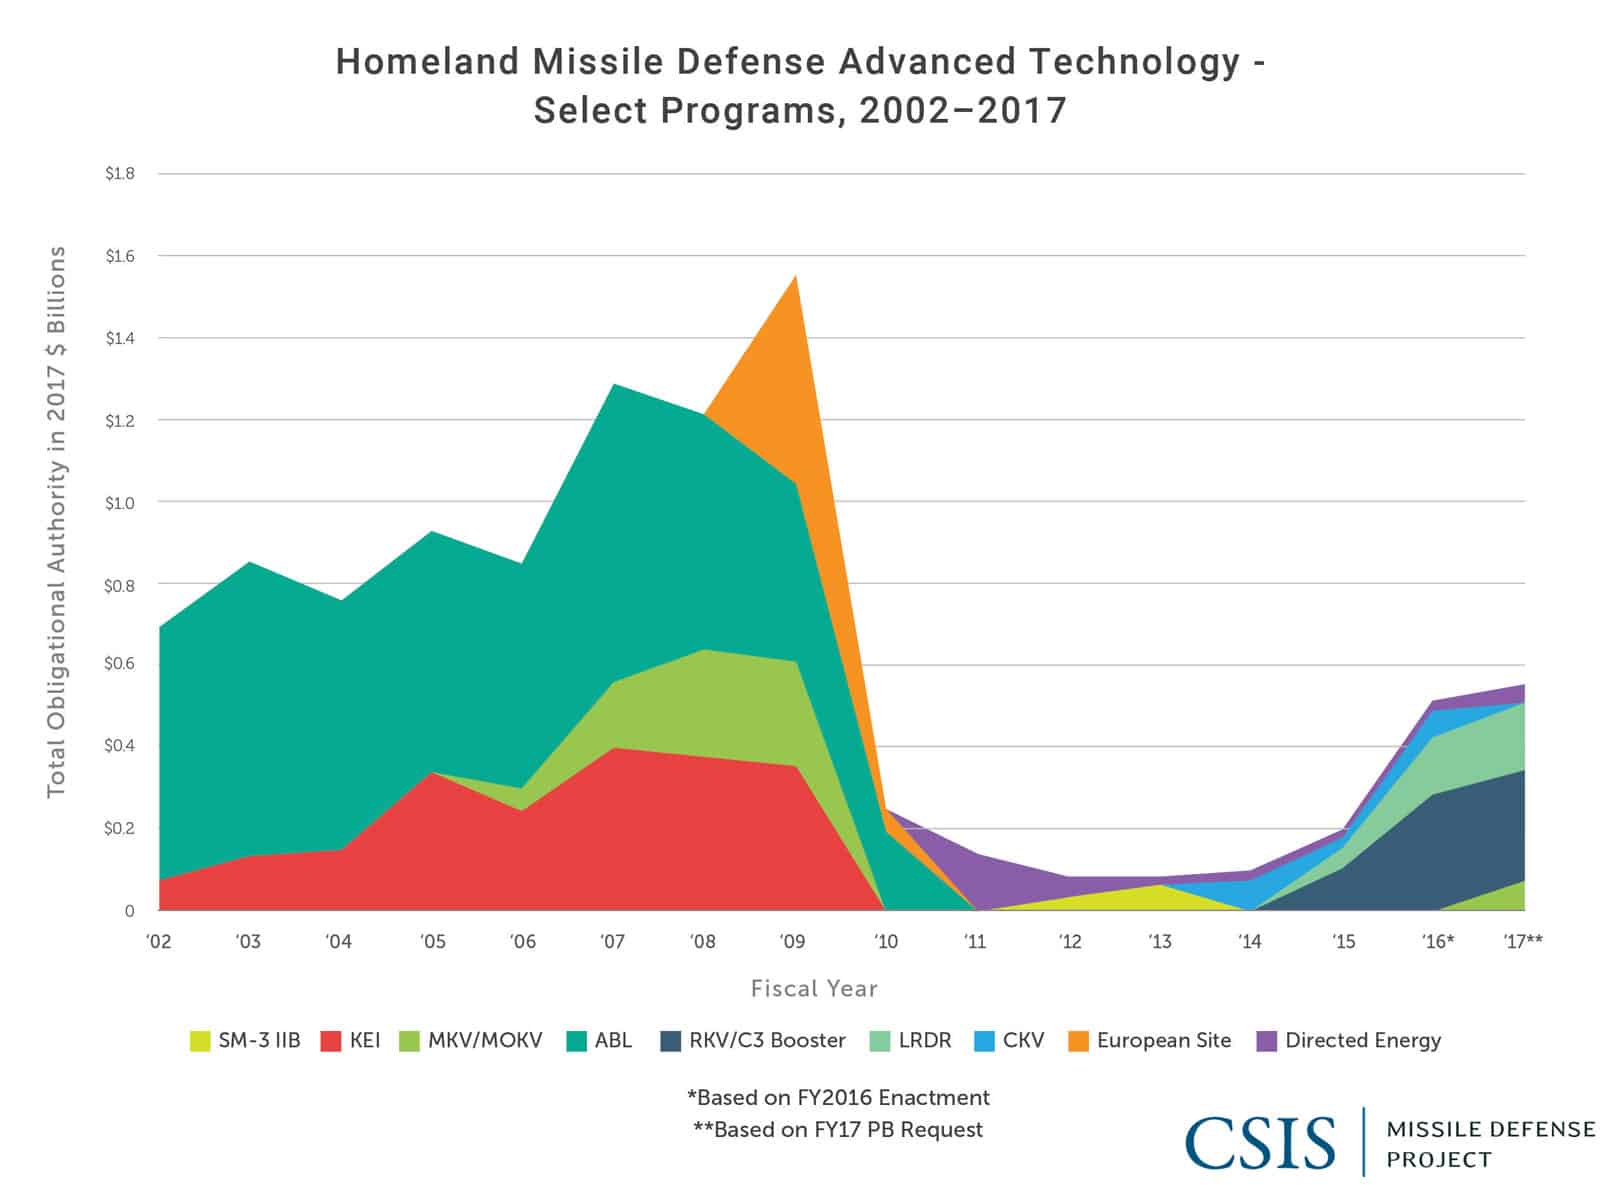 Homeland Missile Defense Advanced Technology: Select Programs, 2002-2017